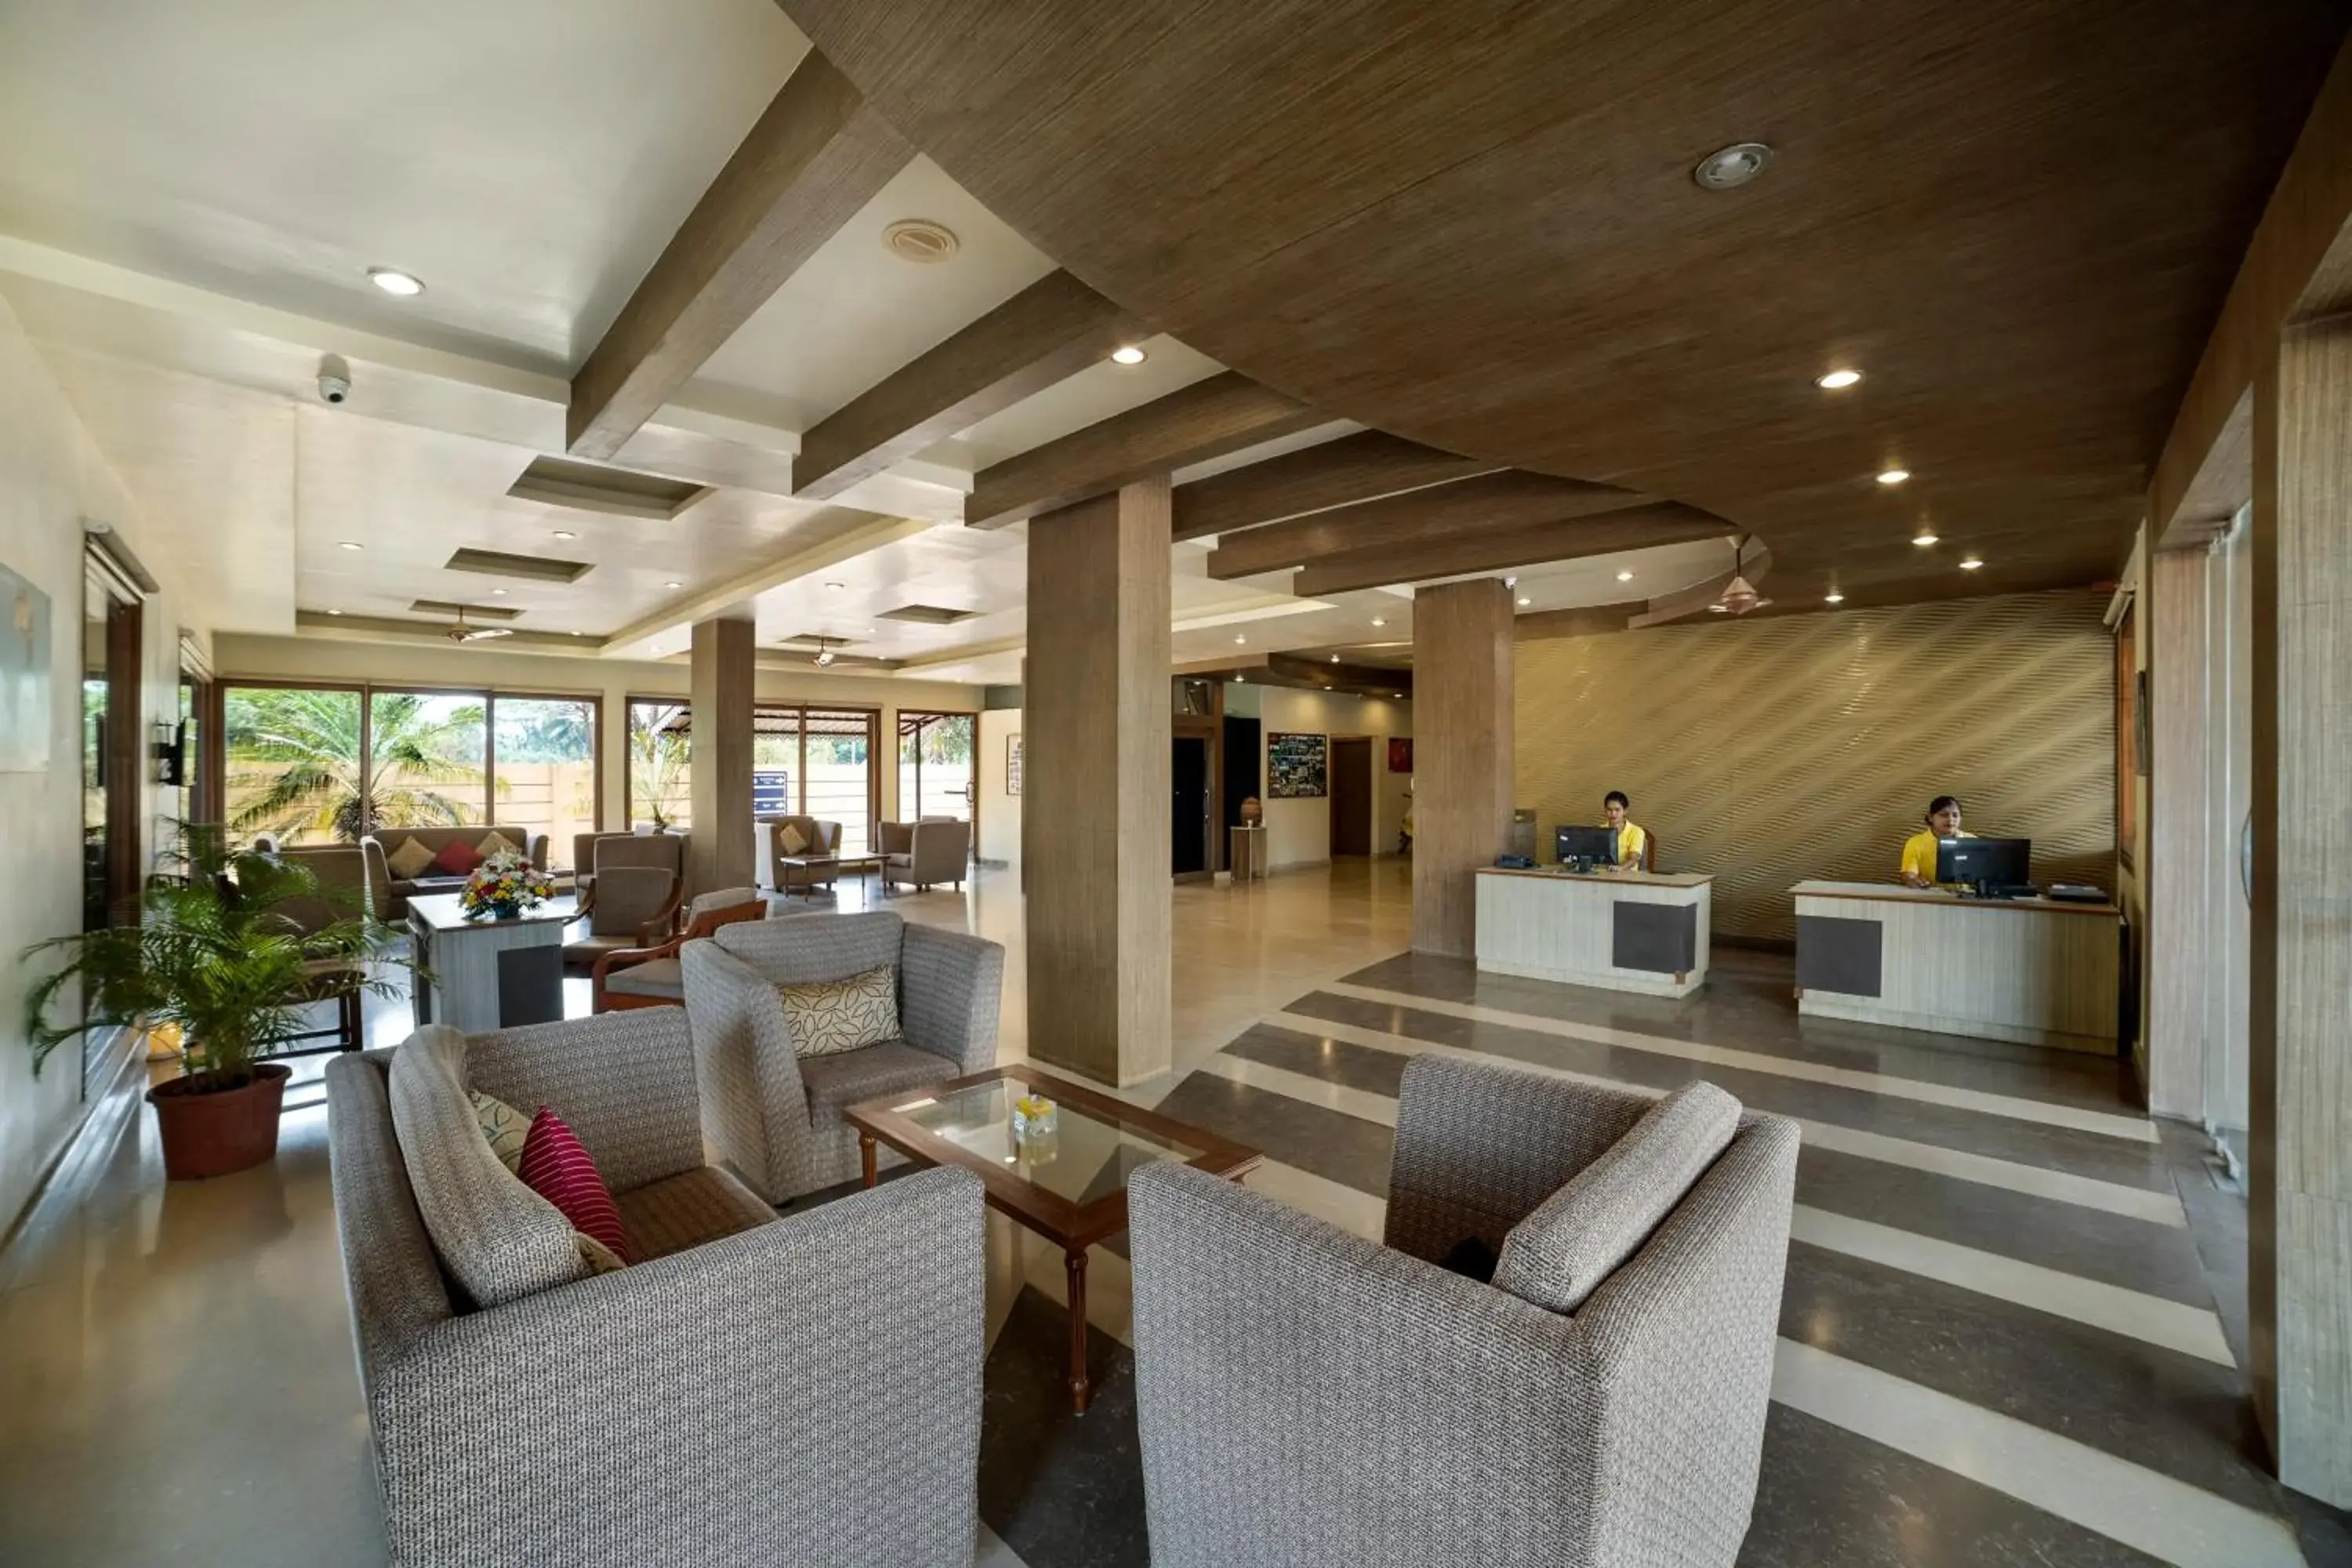 Lobby or reception, Lobby/Reception in Sterling Karwar